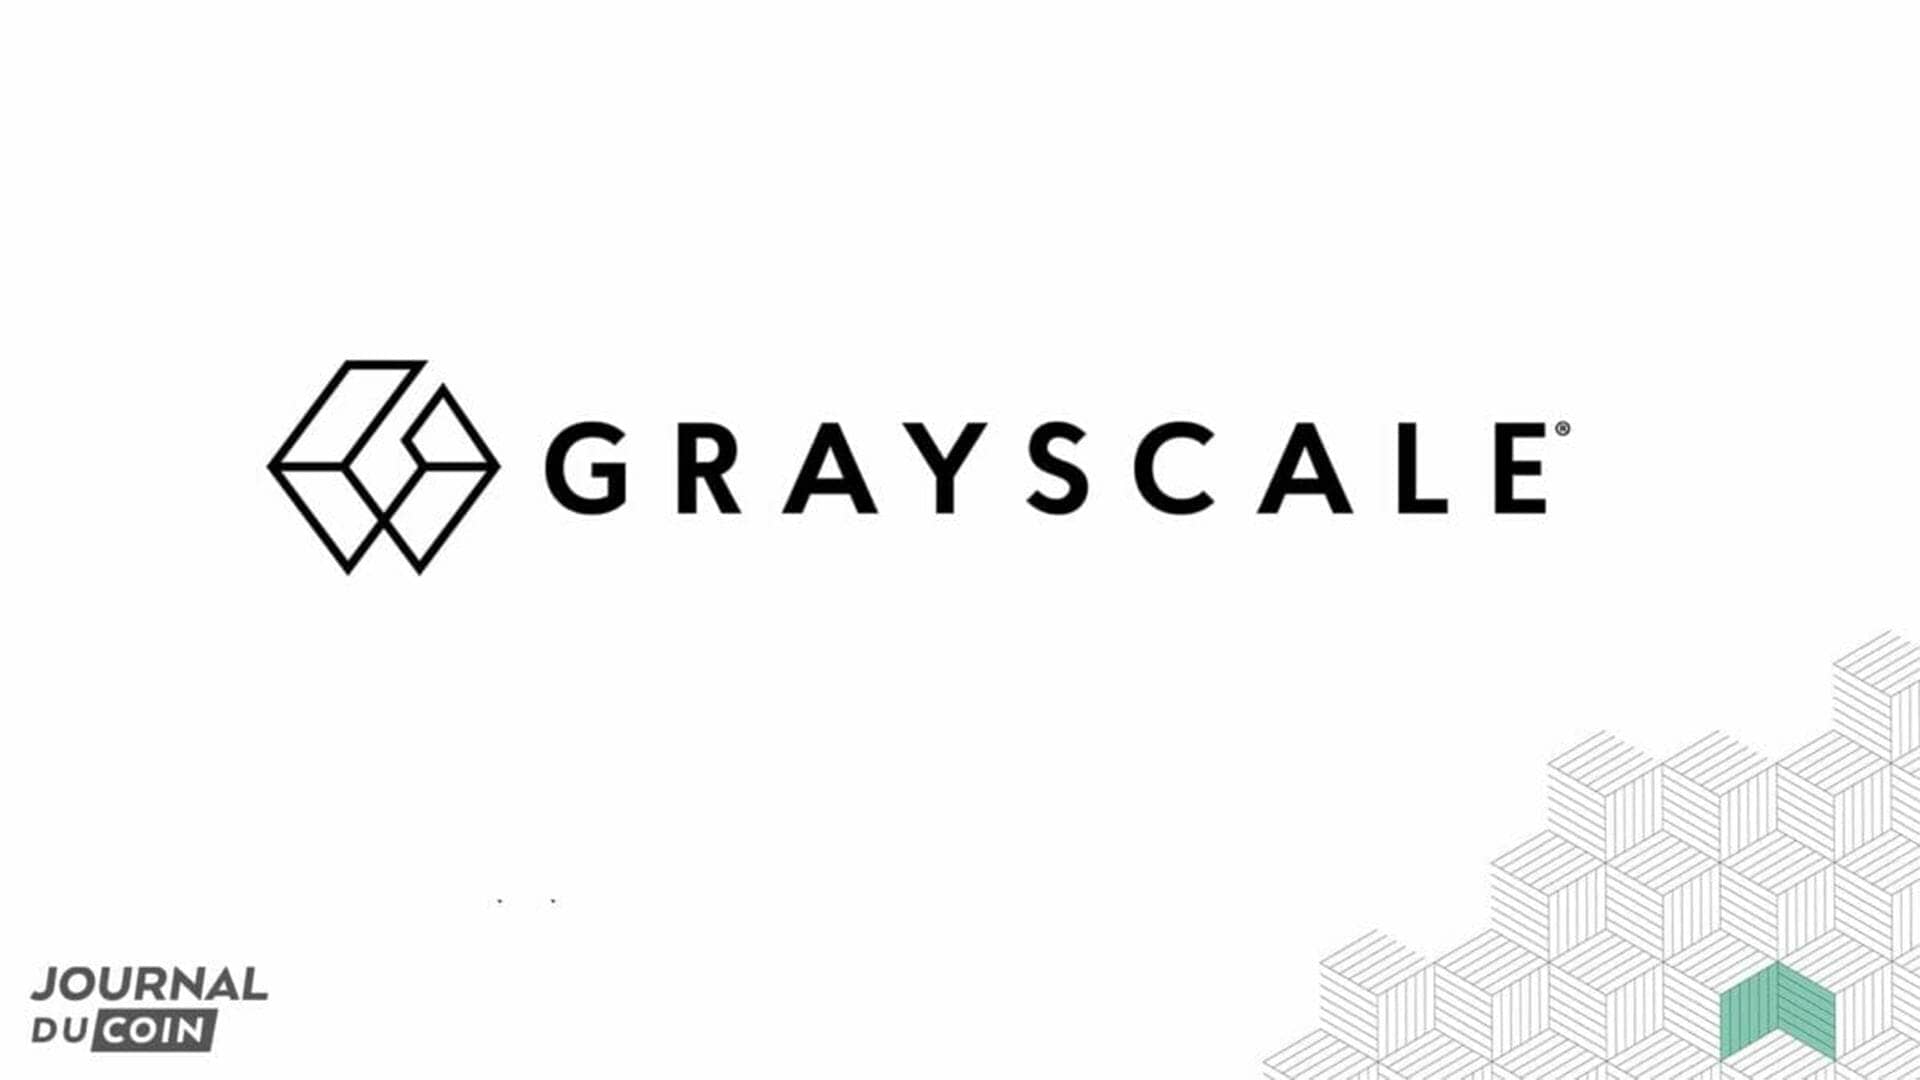 Logo du fond d'investissement spécialisé en cryptomonnaies, Grayscale.